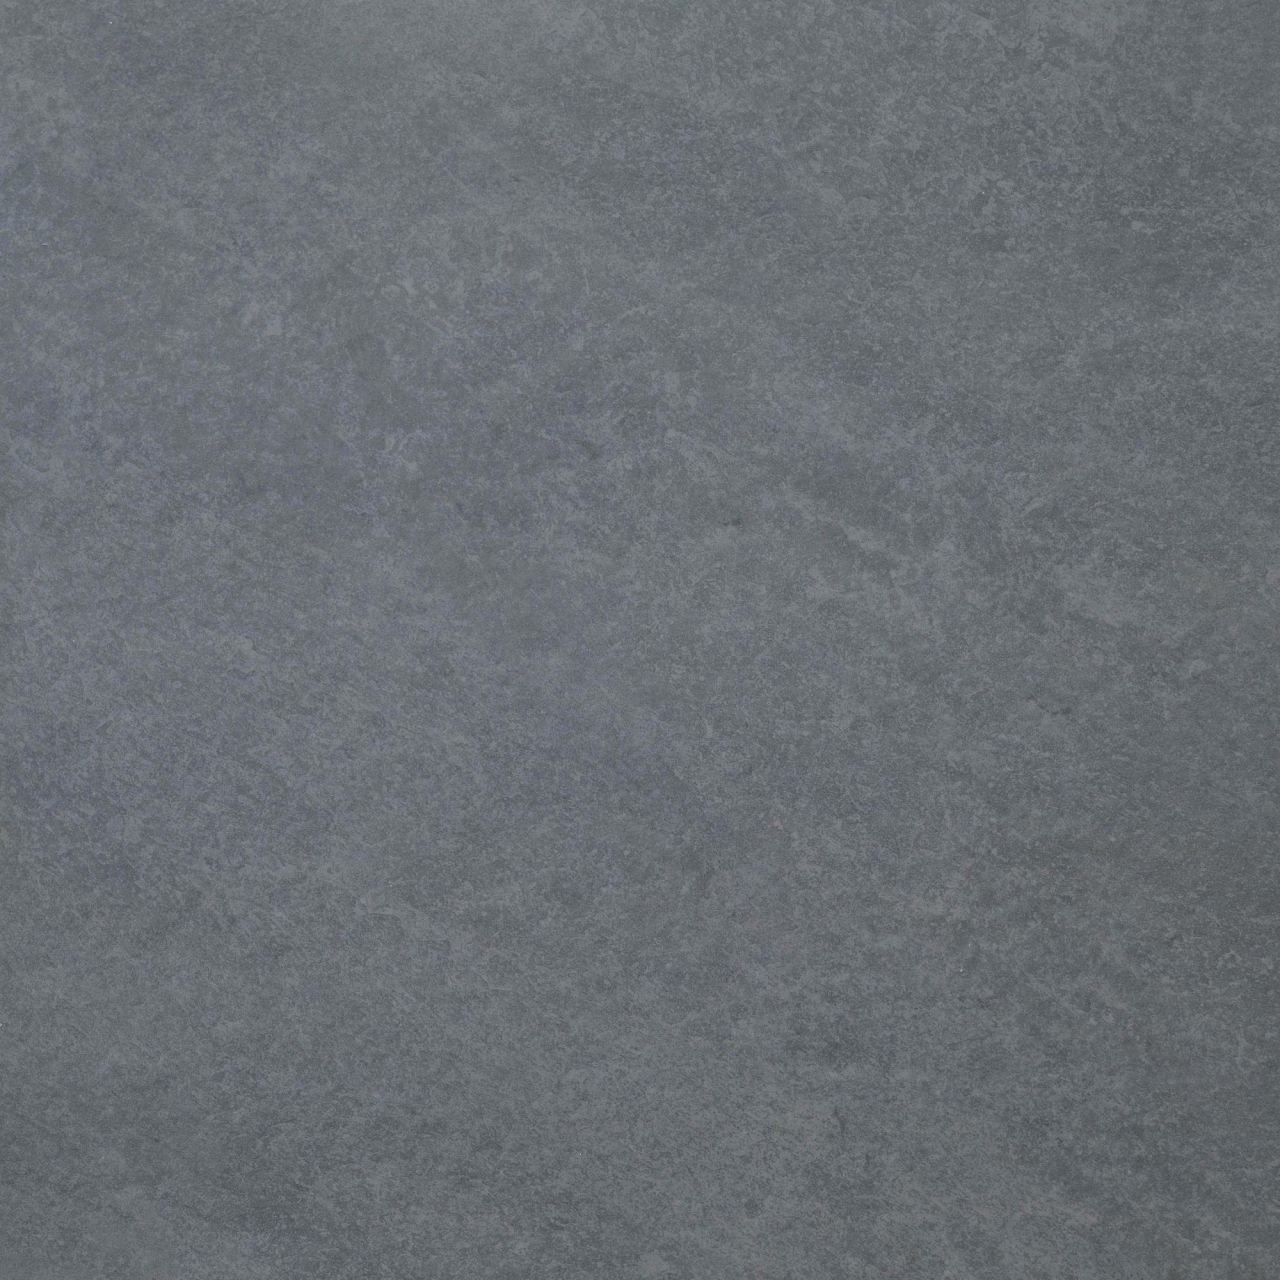 Terrassenplatte Feinsteinzeug Manhatten 60 x 60 x 2 cm grau von Euro Stone